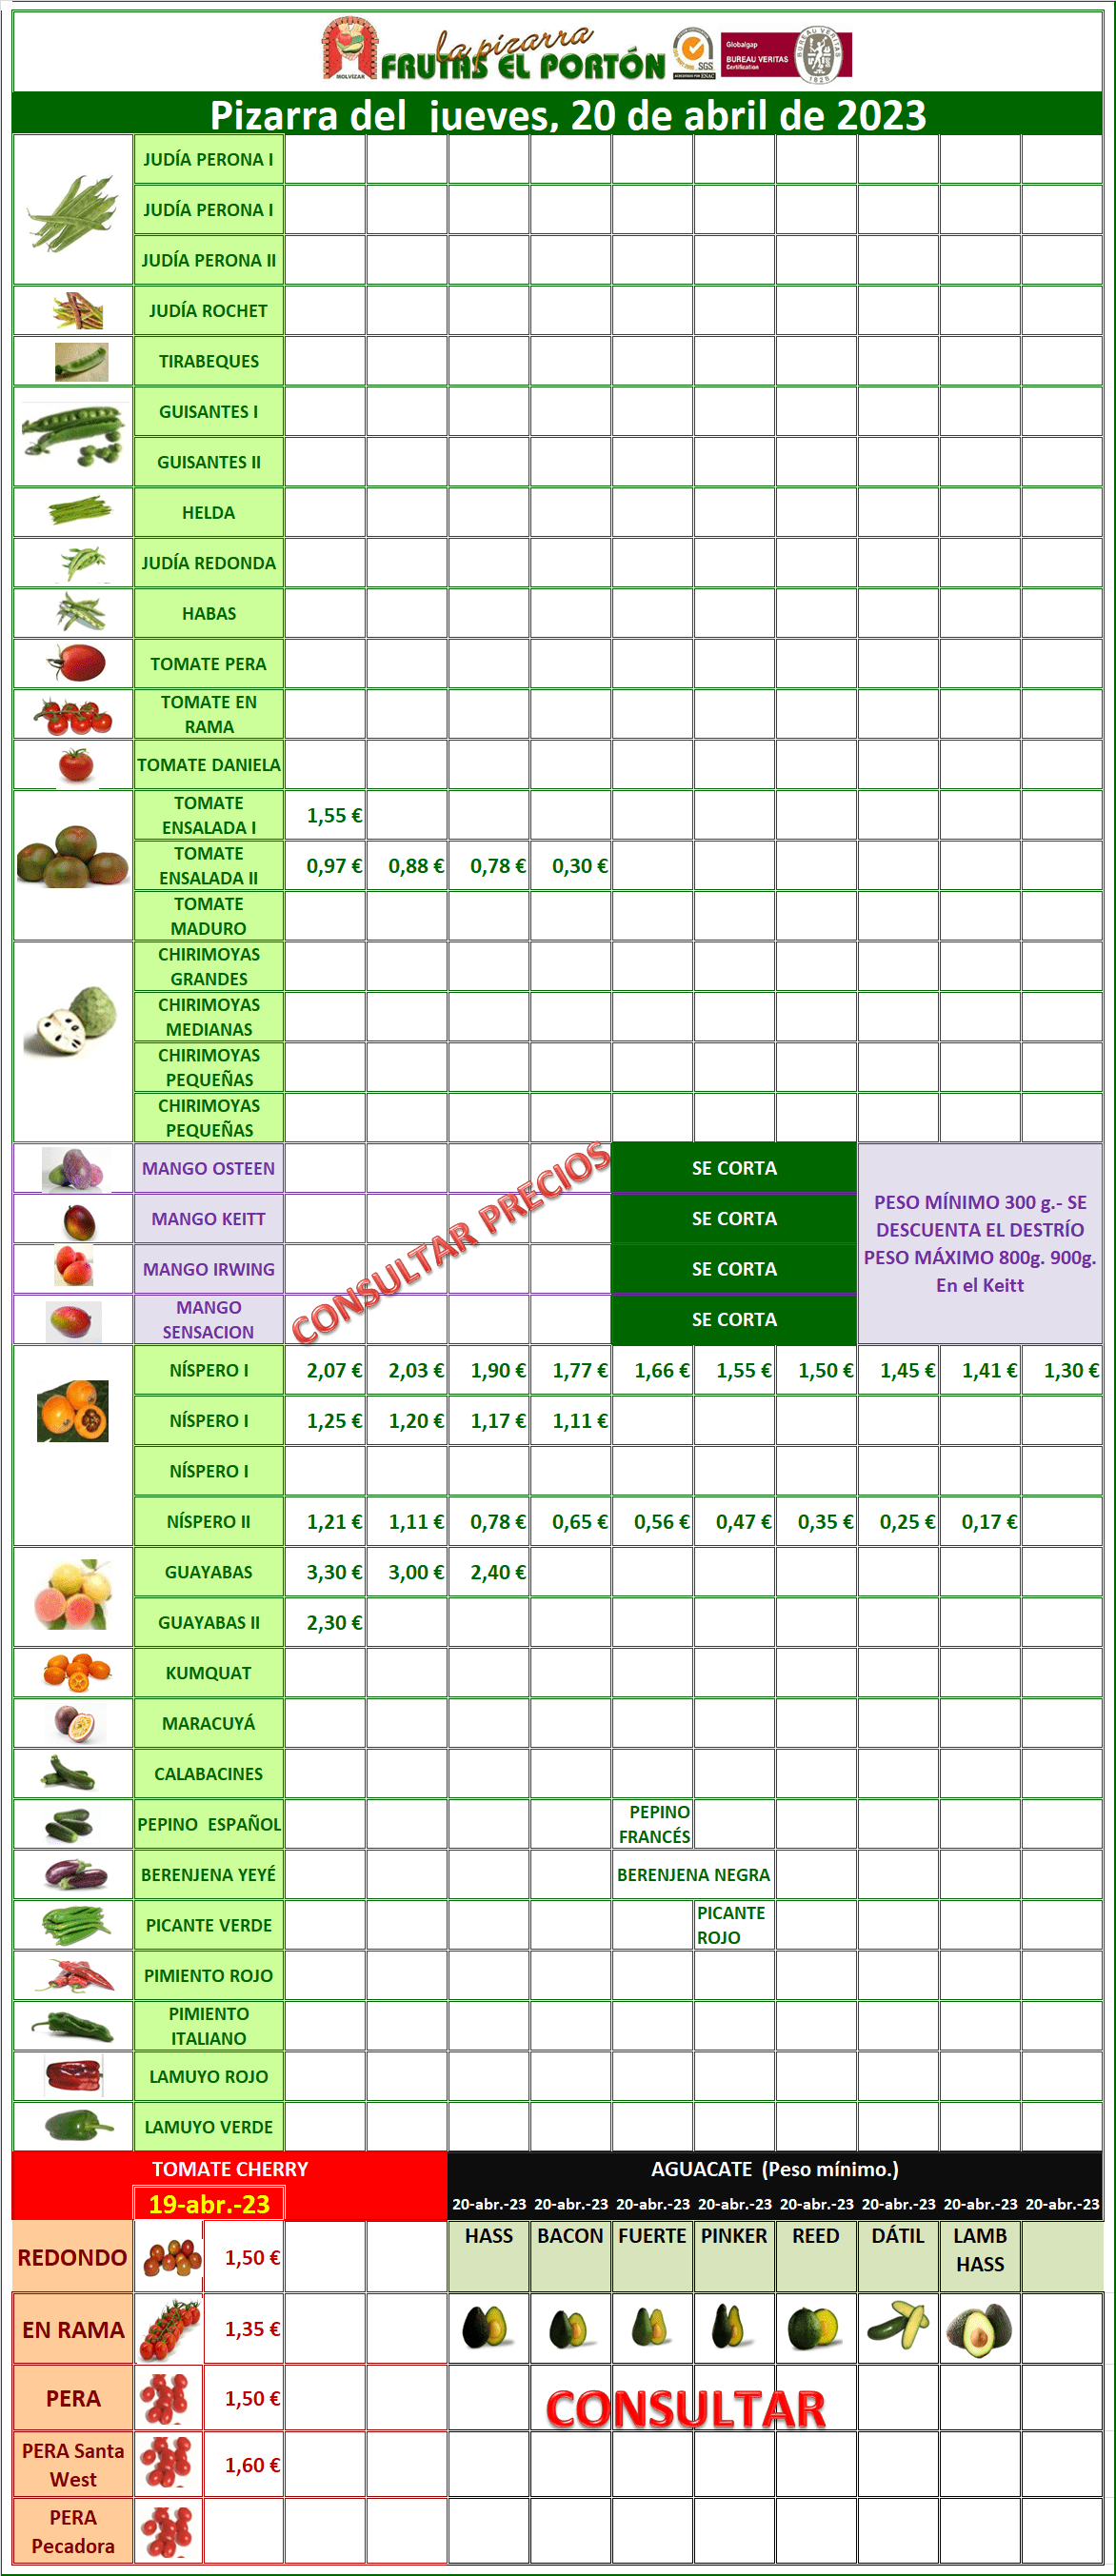 Subasta hortofrutícola Frutas El Portón 20 de abril 2023